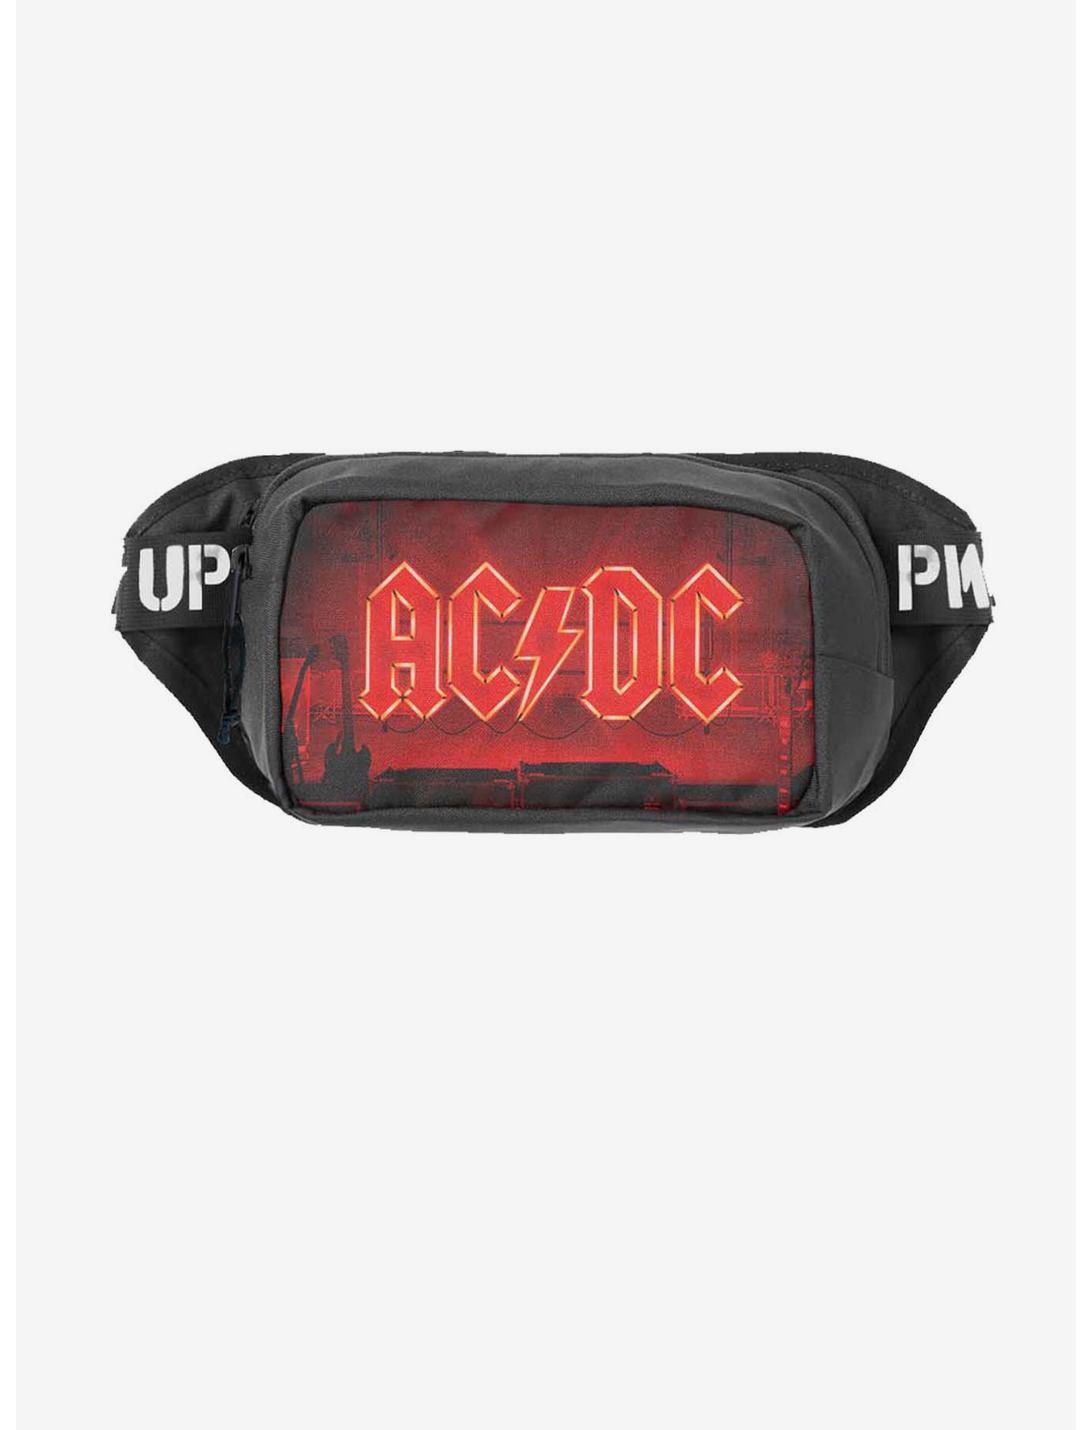 Rocksax AC/DC Power Up Shoulder Bag Fanny Pack, , hi-res